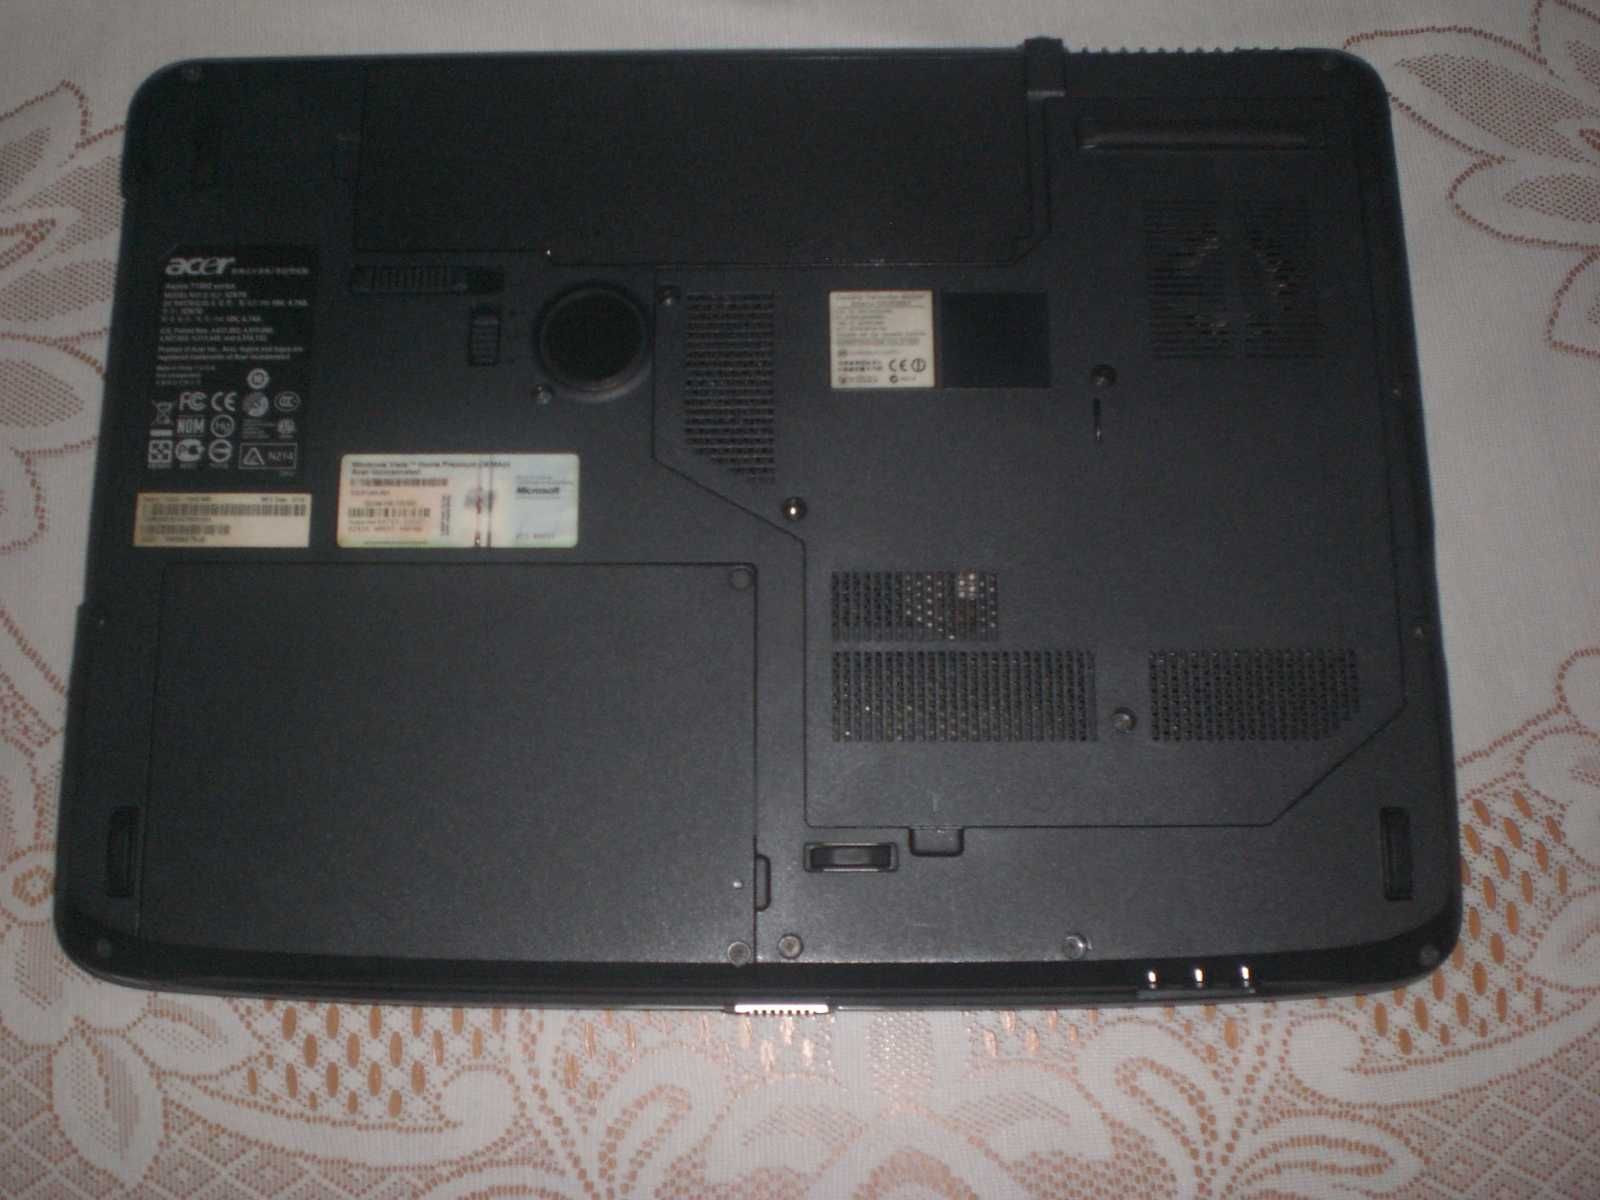 Acer Aspire 7720Z.sprawny 17'' 1440x900.blueray drive